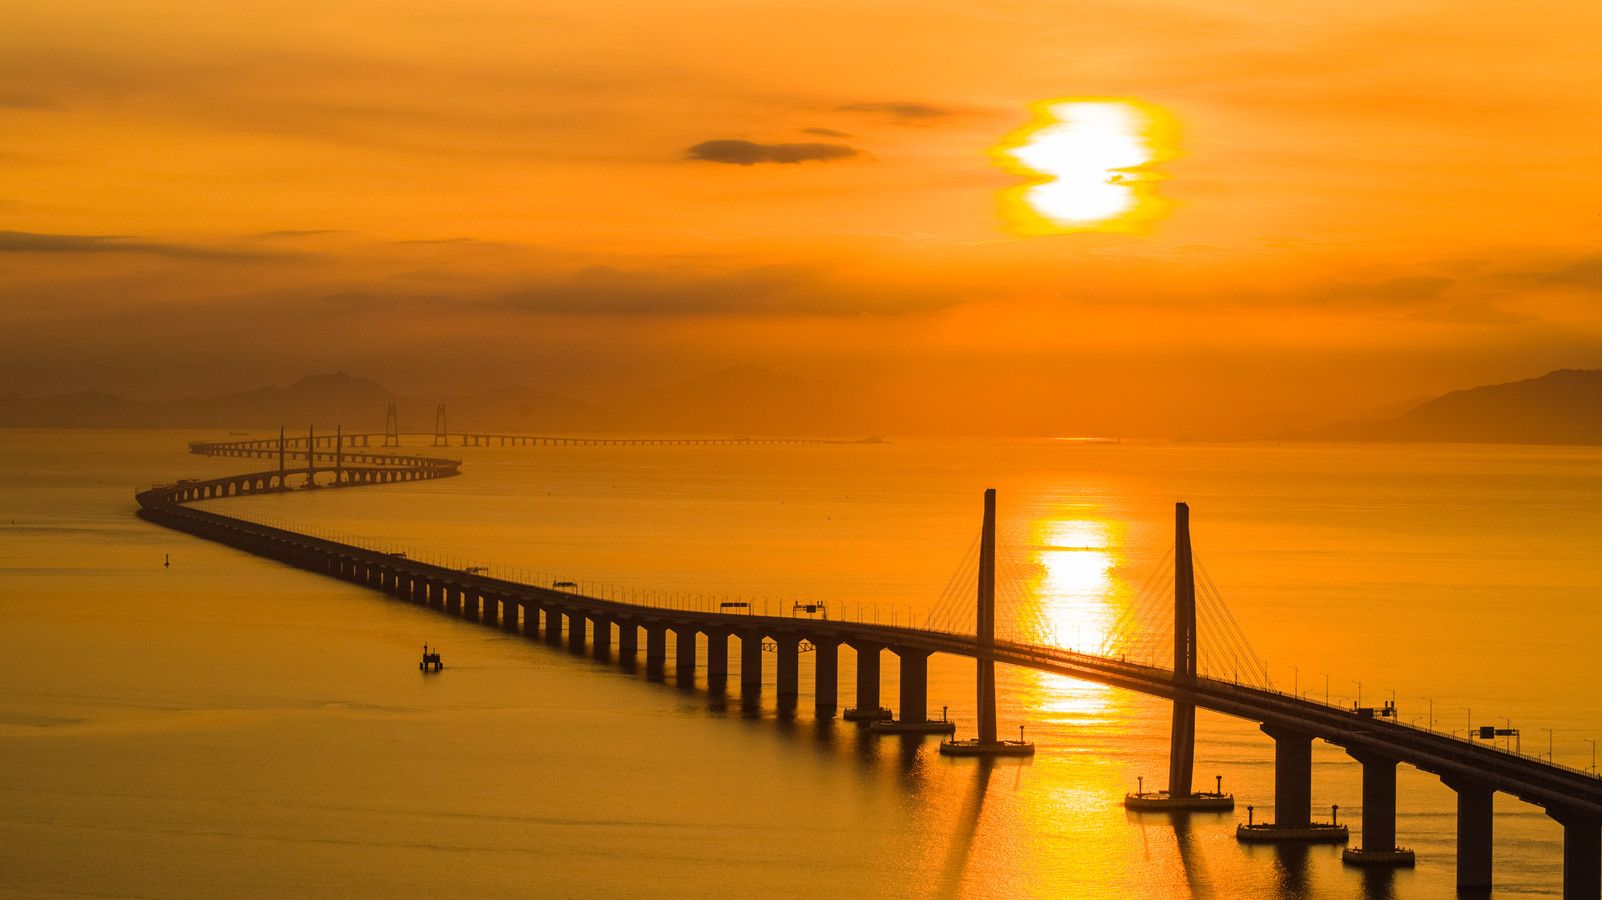 飞架伶仃洋的港珠澳大桥创下多项世界记录,它是世界上最长的跨海大桥,它被称为新的世_珠海港(000507)股吧_东方财富网股吧